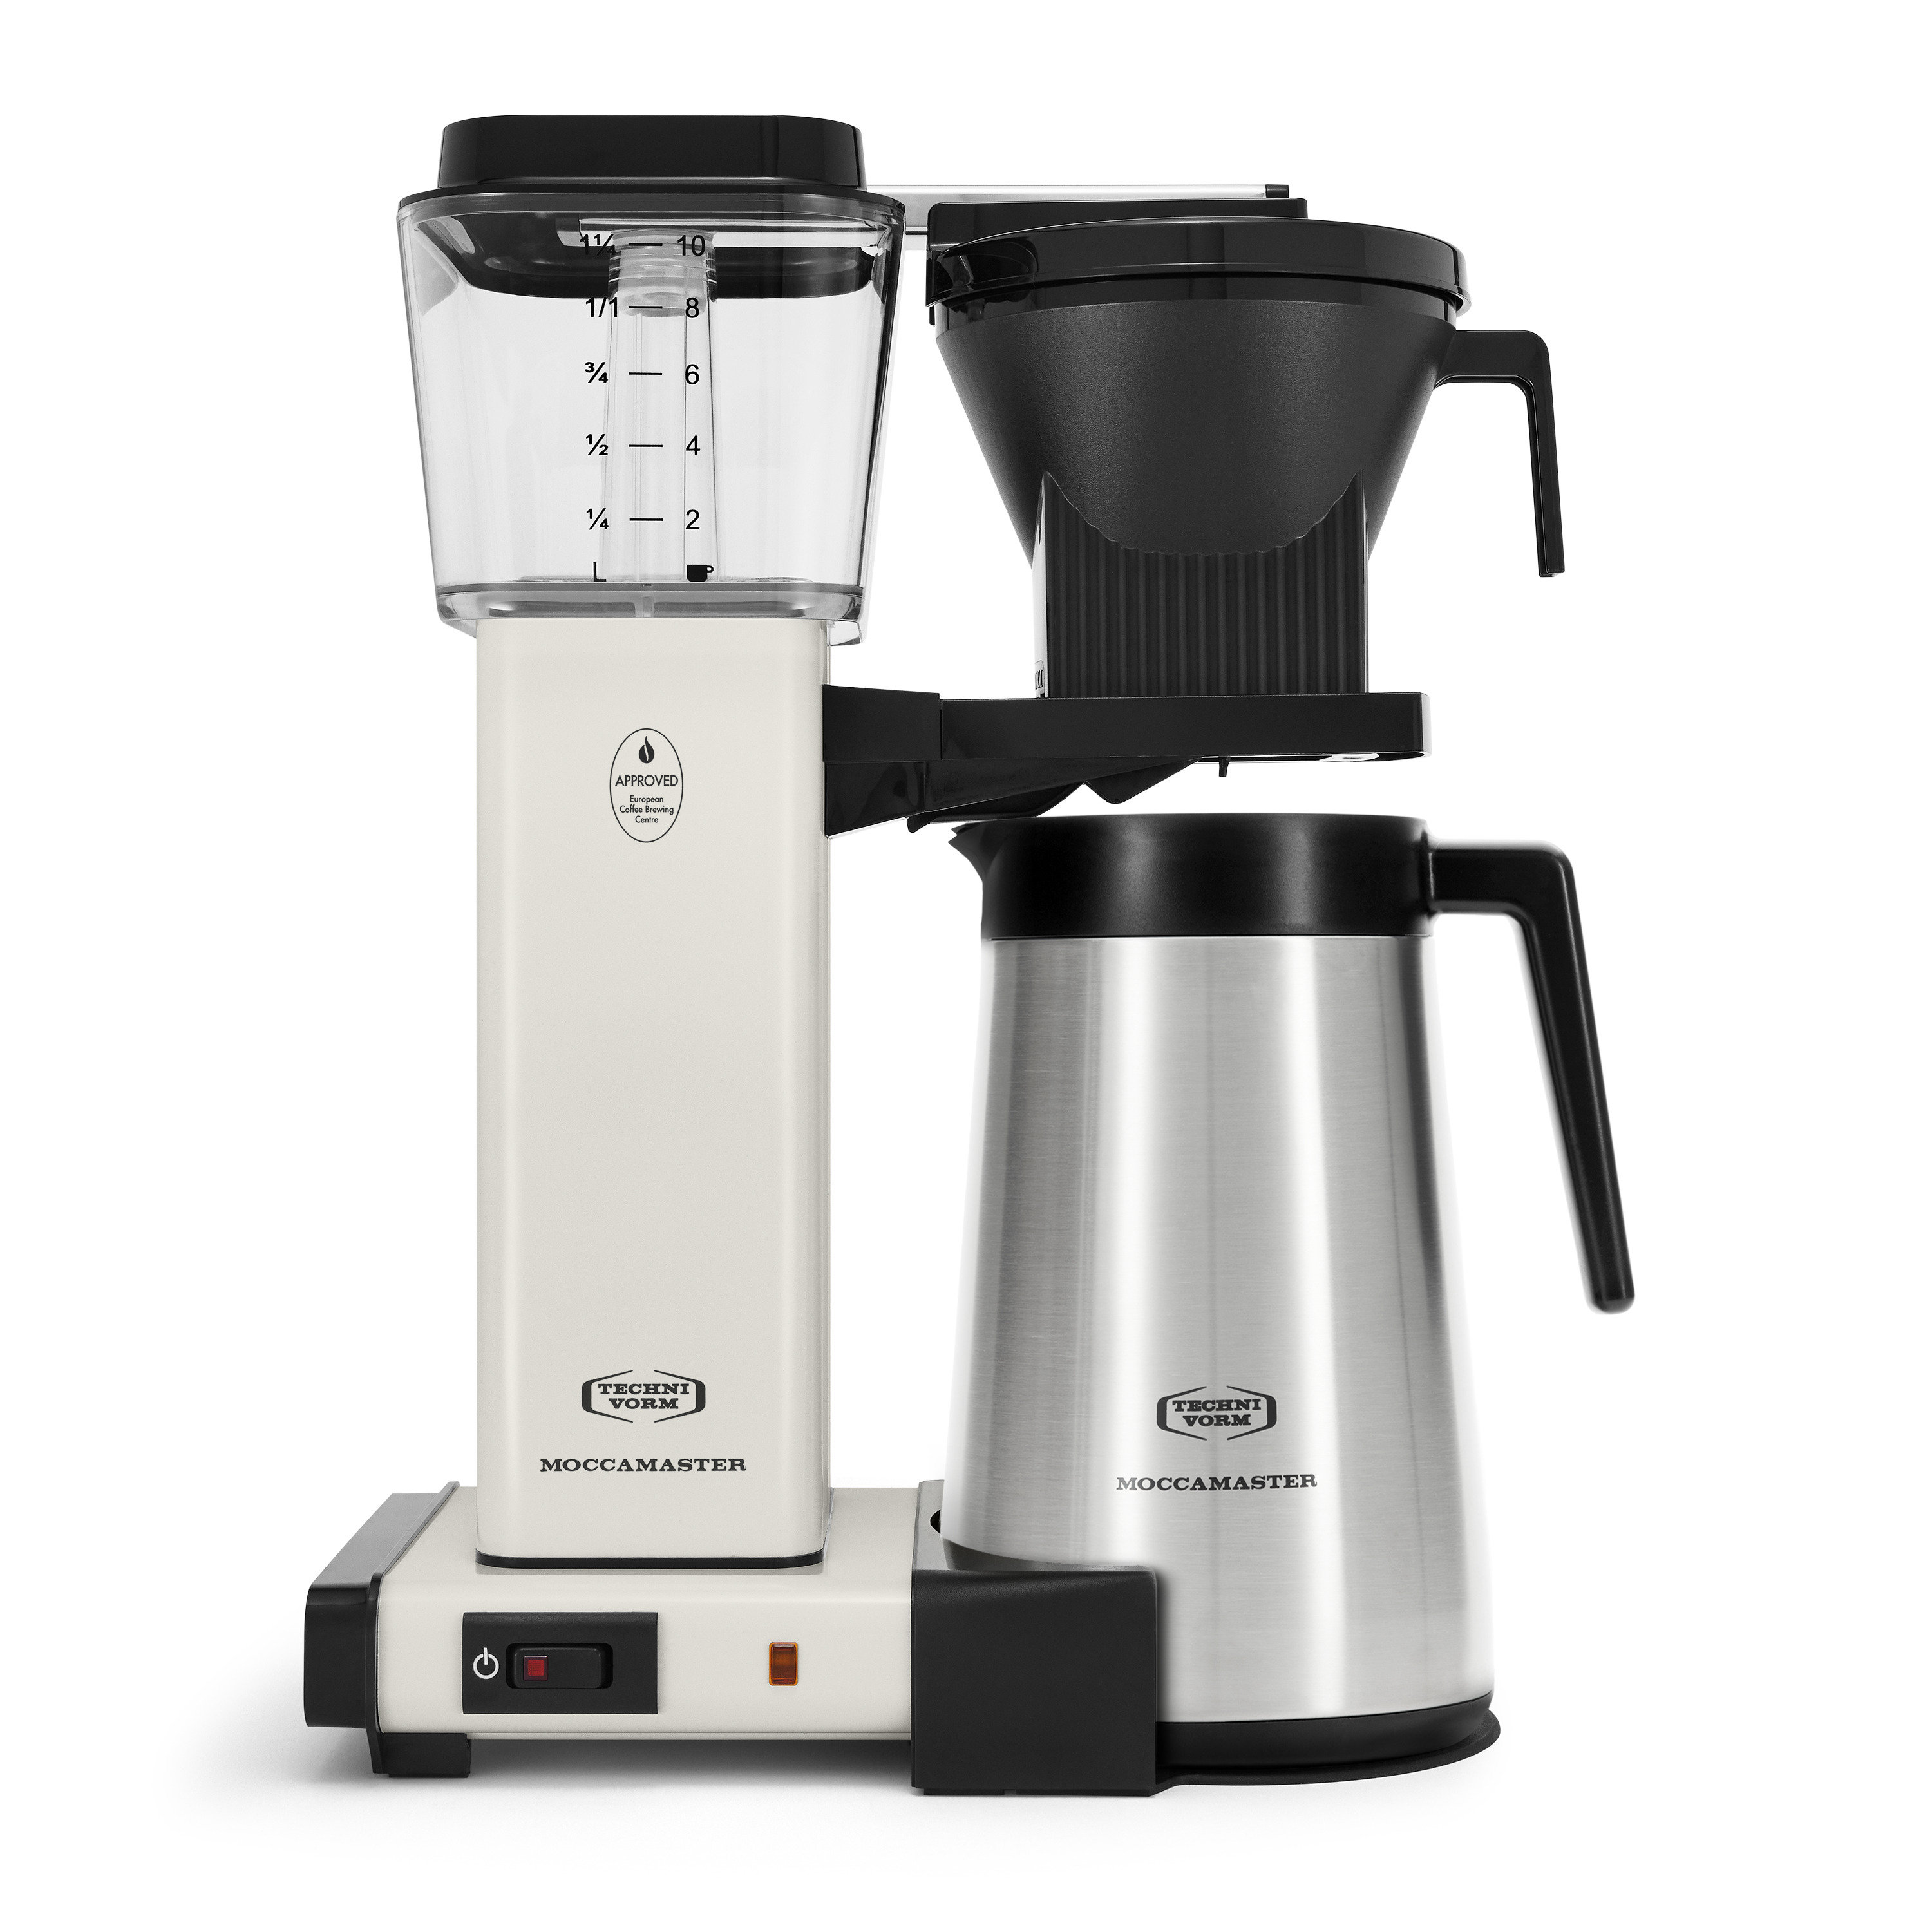 https://assets.wfcdn.com/im/44981880/compr-r85/2408/240888541/moccamaster-10-cup-kbgt-coffee-maker.jpg